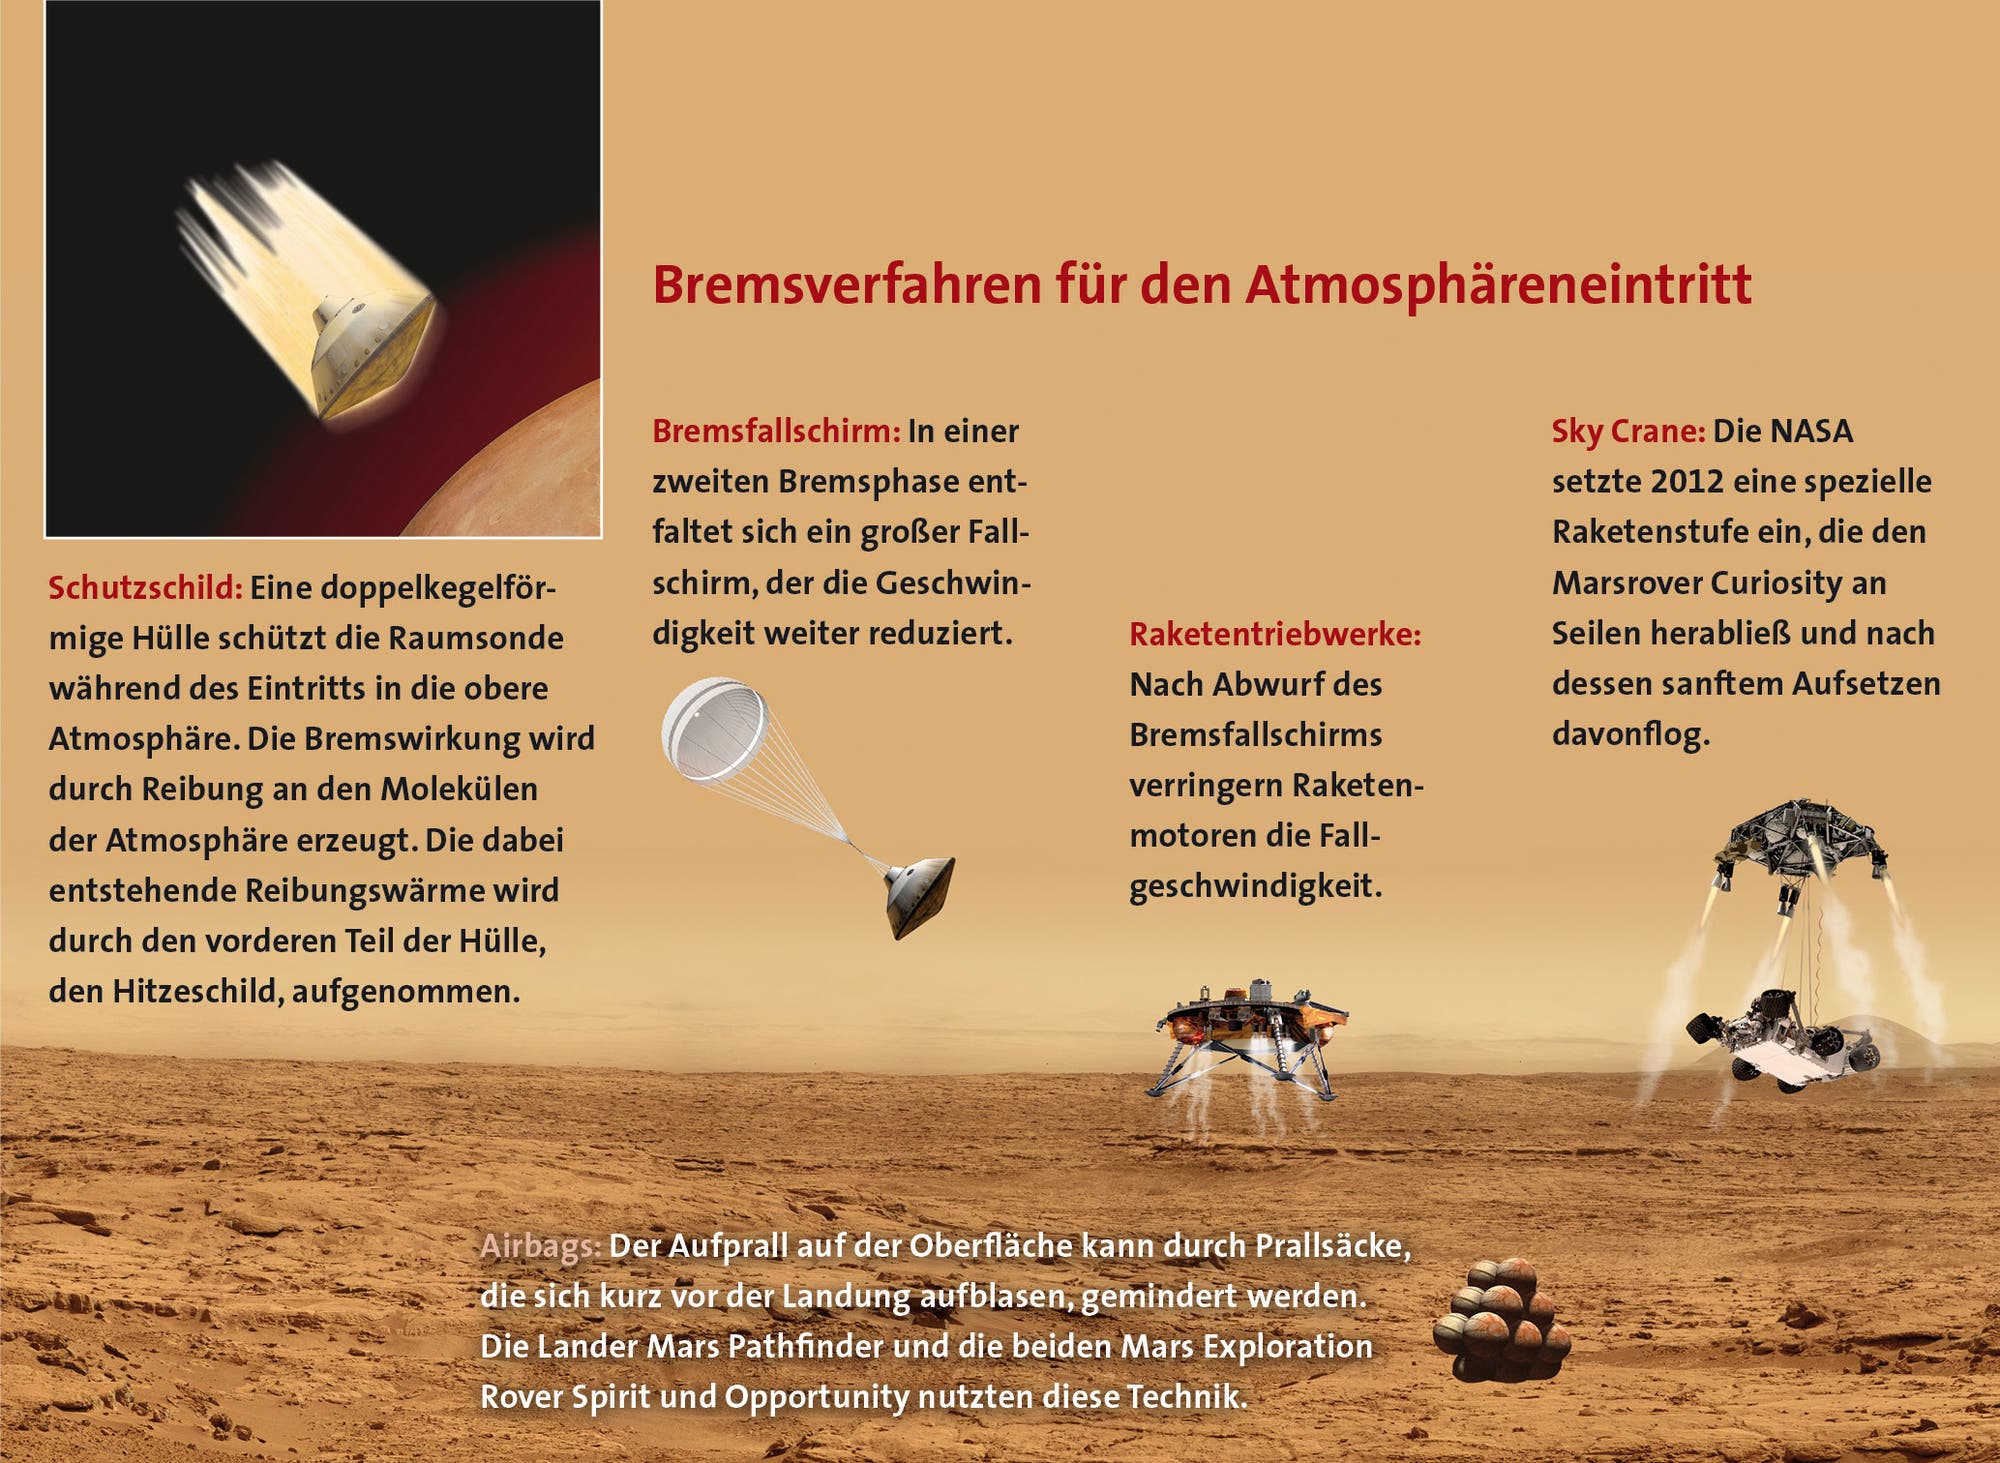 Bremsverfahren in der Marsatmosphäre